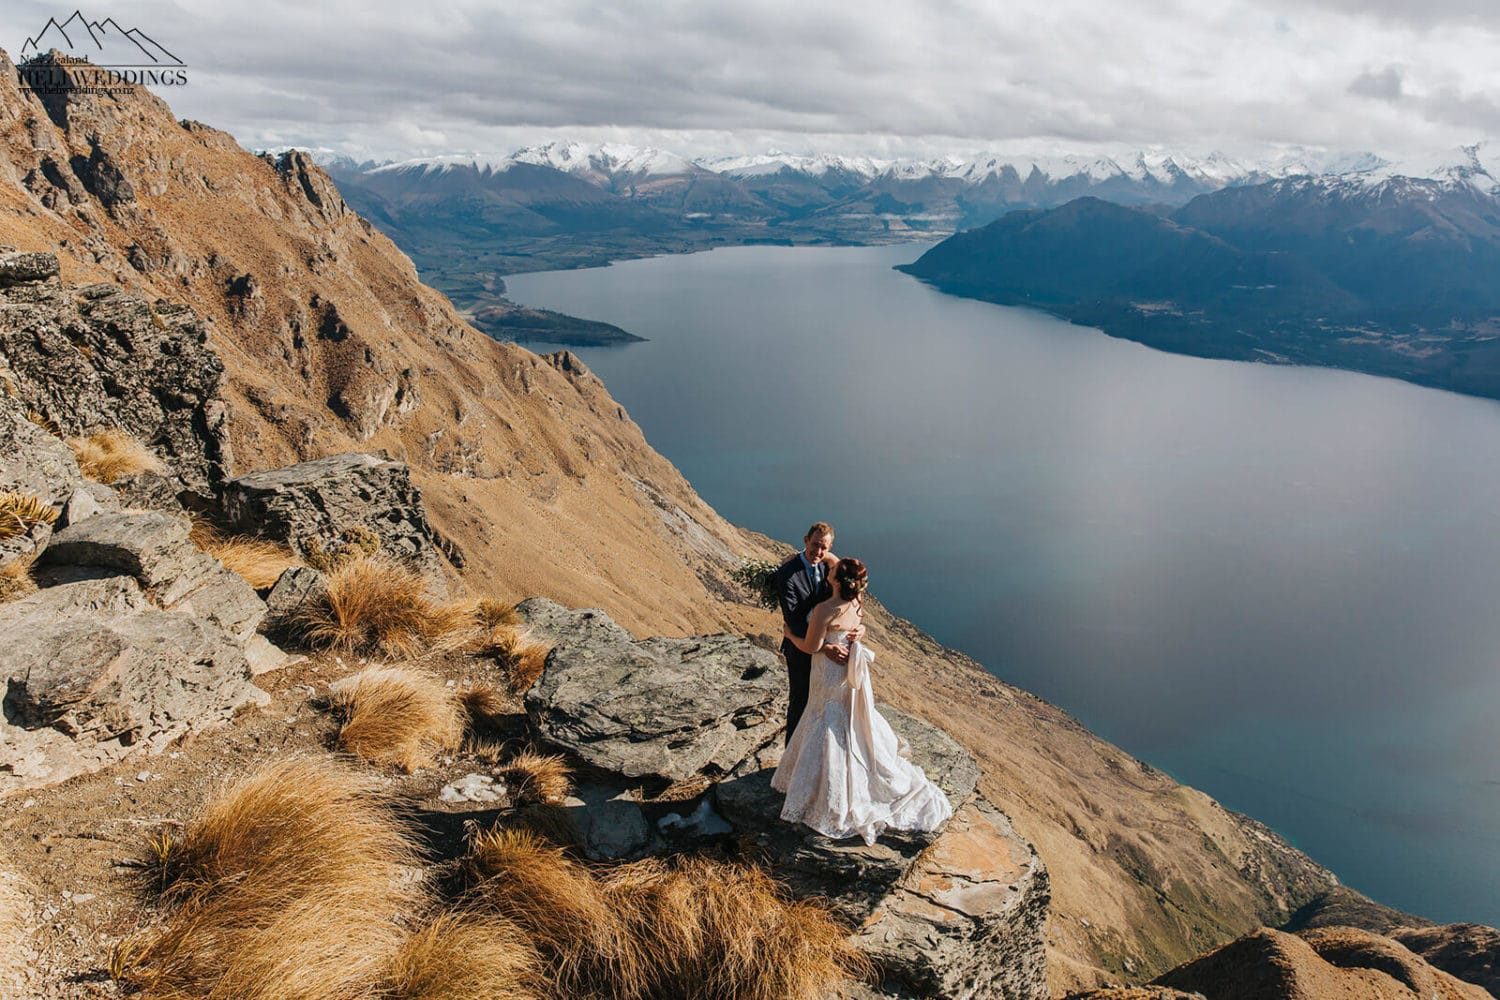 Winter Wedding in New Zealand, Queenstown mountain wedding packages